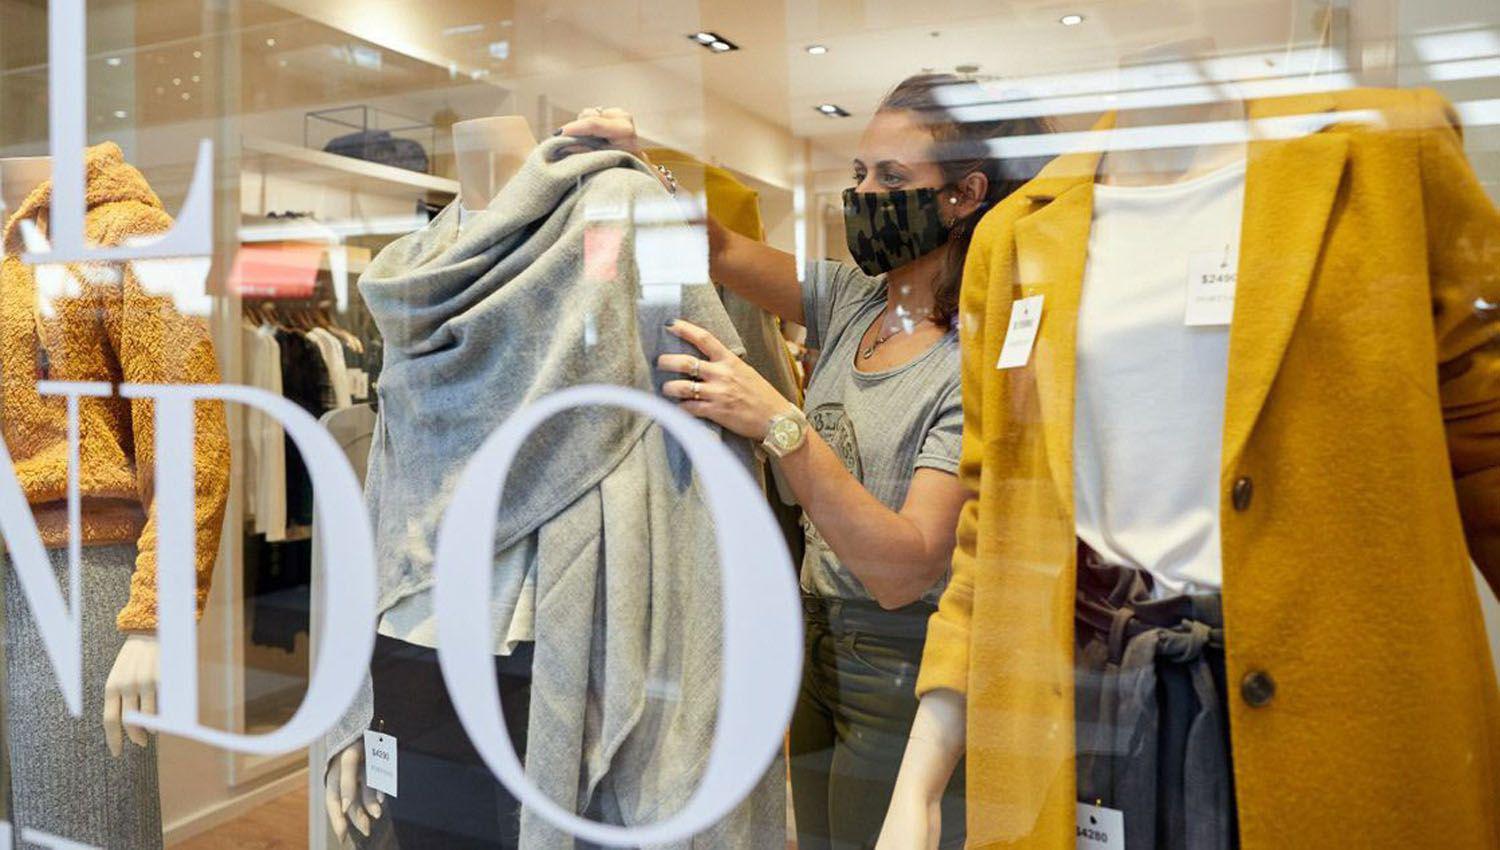 El aumento de ropa y calzado supera a la inflacioacuten general